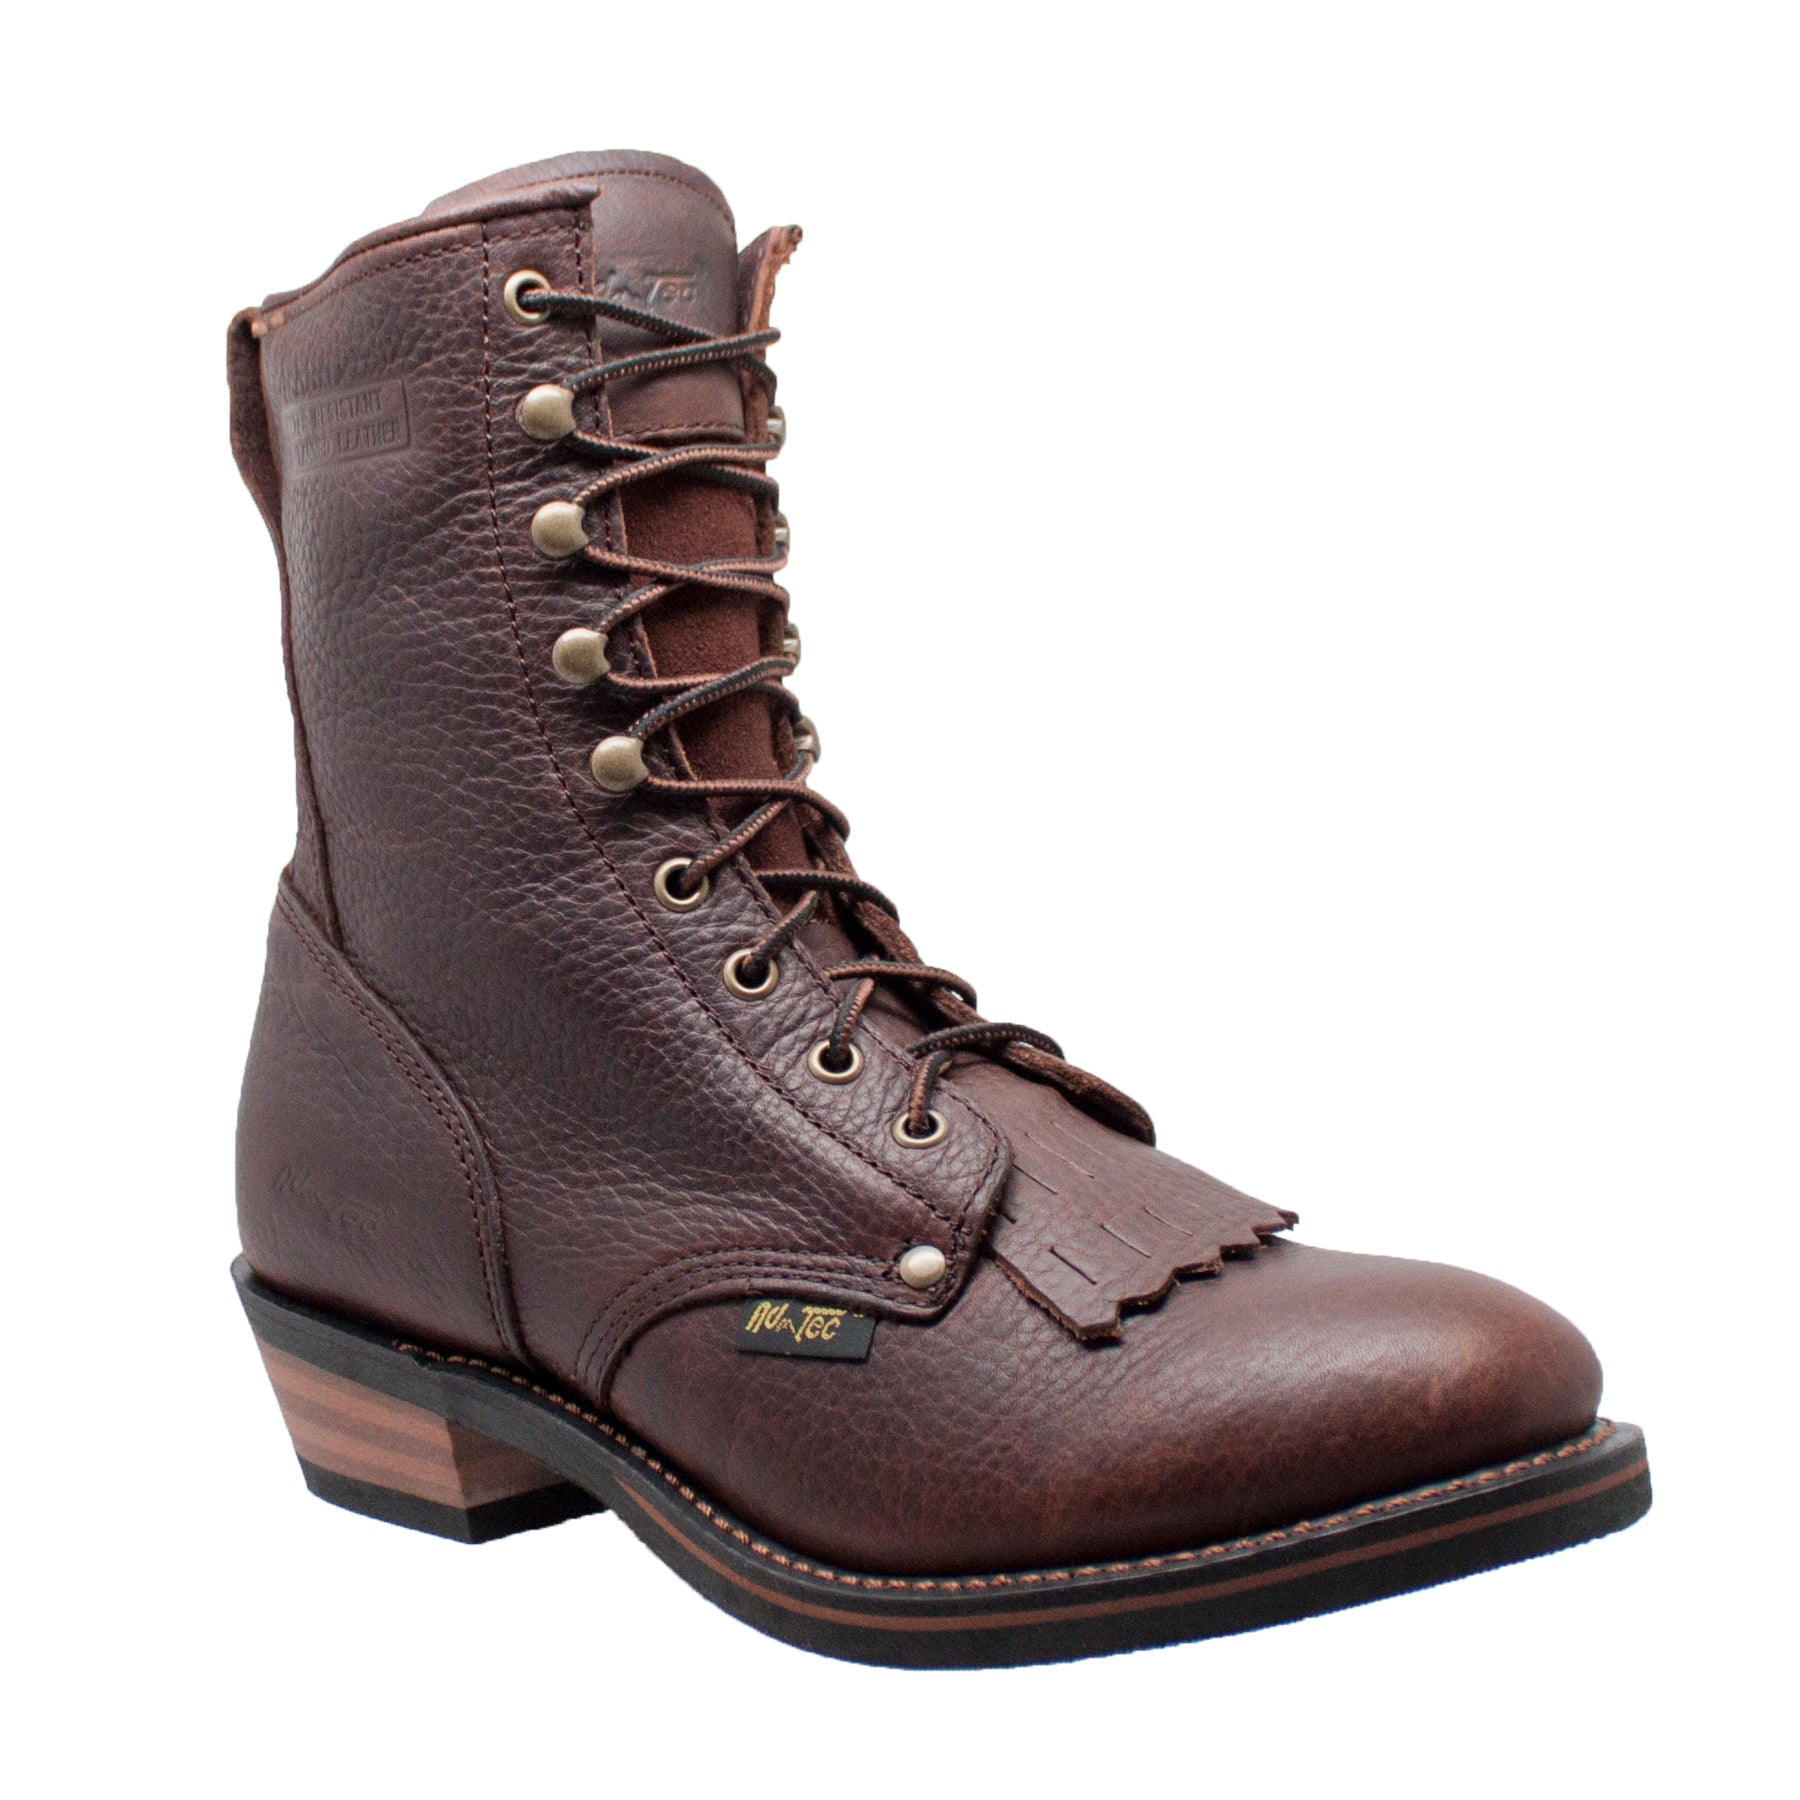 Shop the Best Work Boots & Footwear | AdTec Footwear – AdTecFootWear